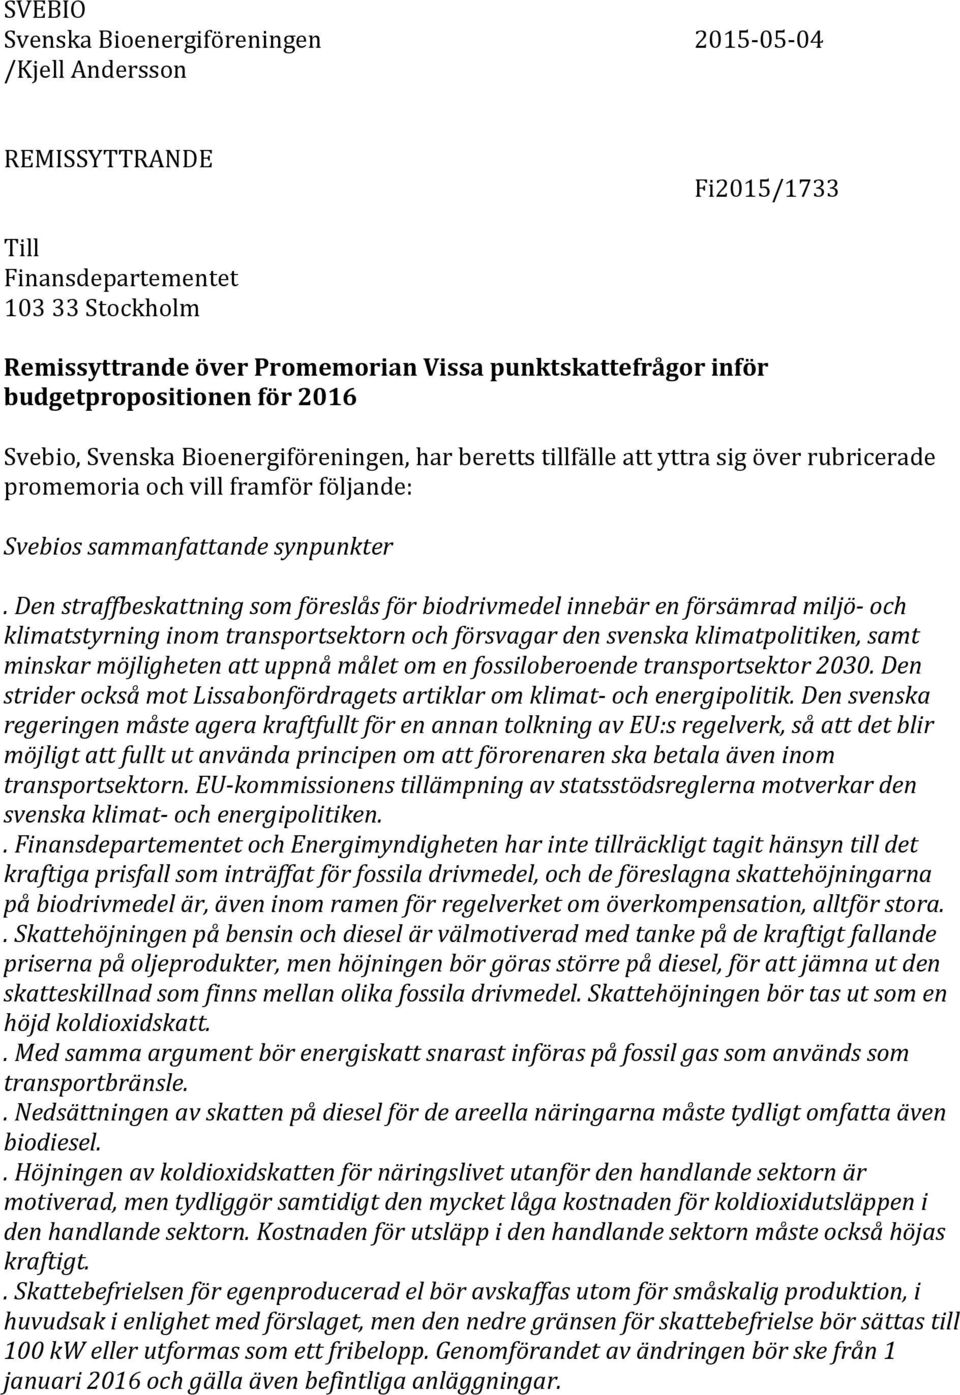 Den straffbeskattning som föreslås för biodrivmedel innebär en försämrad miljö- och klimatstyrning inom transportsektorn och försvagar den svenska klimatpolitiken, samt minskar möjligheten att uppnå